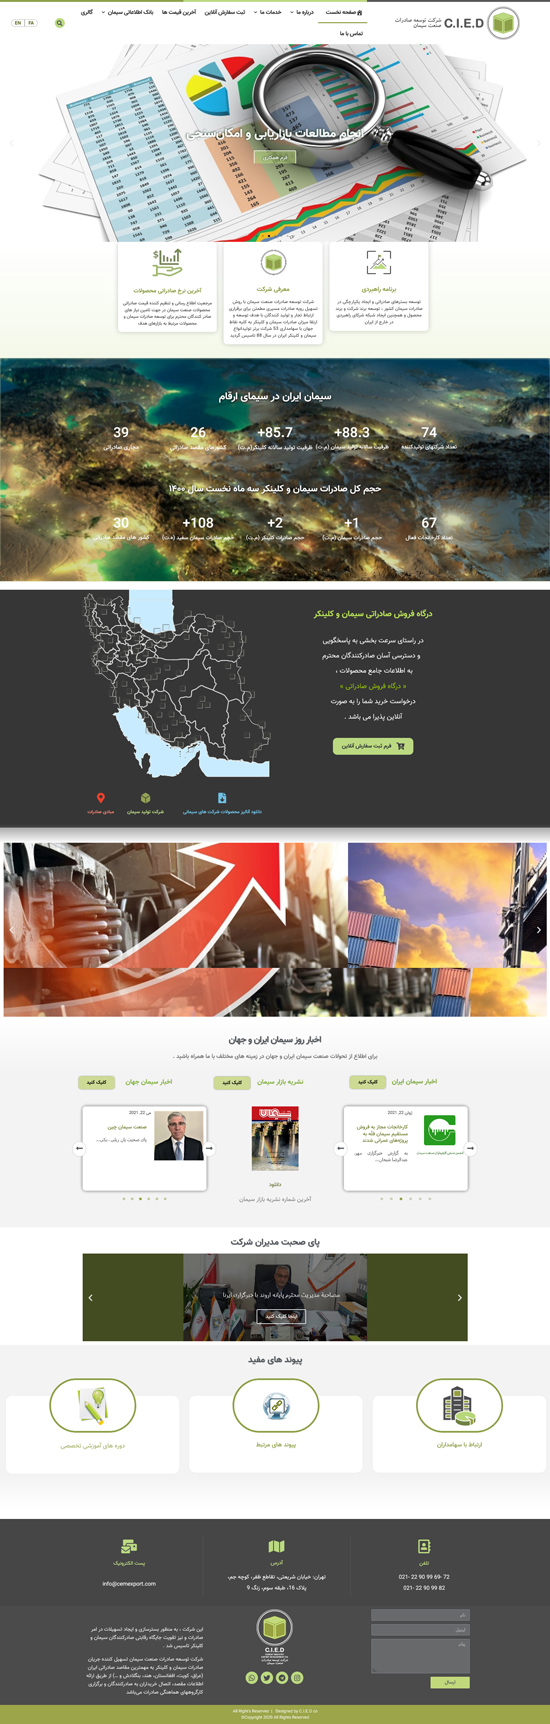 طراحی وب سایت شرکت توسعه صادرات سیمان ایران